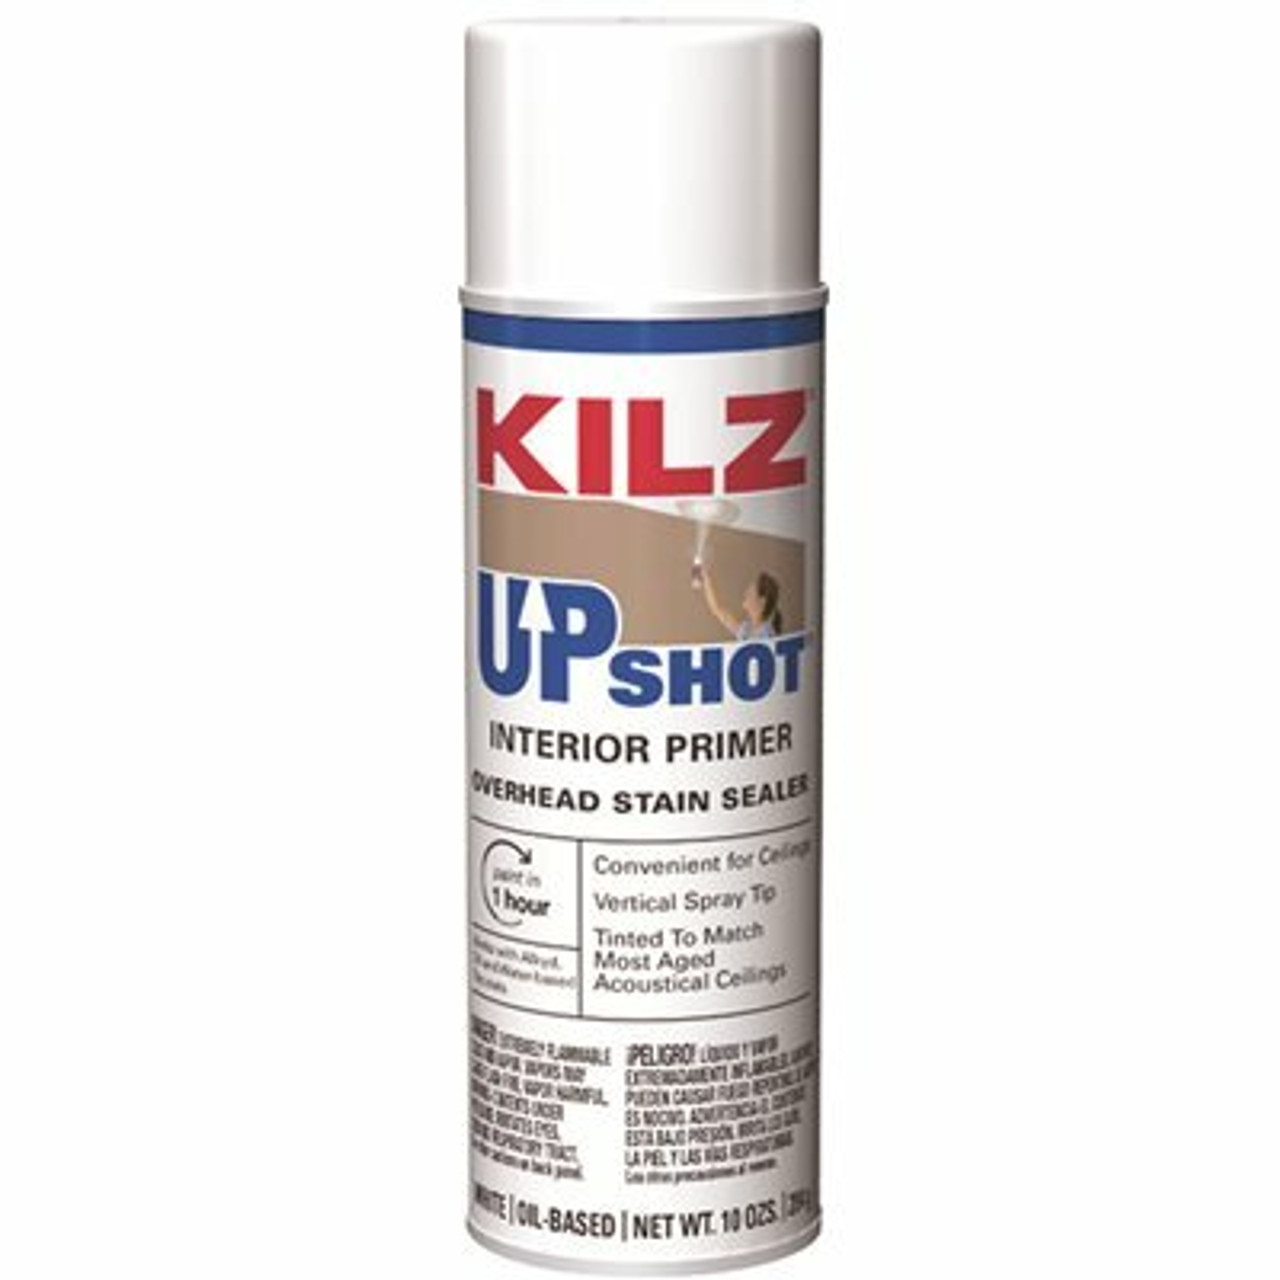 Kilz Upshot 10 Oz. White Overhead Oil-Based Interior Primer Spray Stain Sealer And Stain Blocker